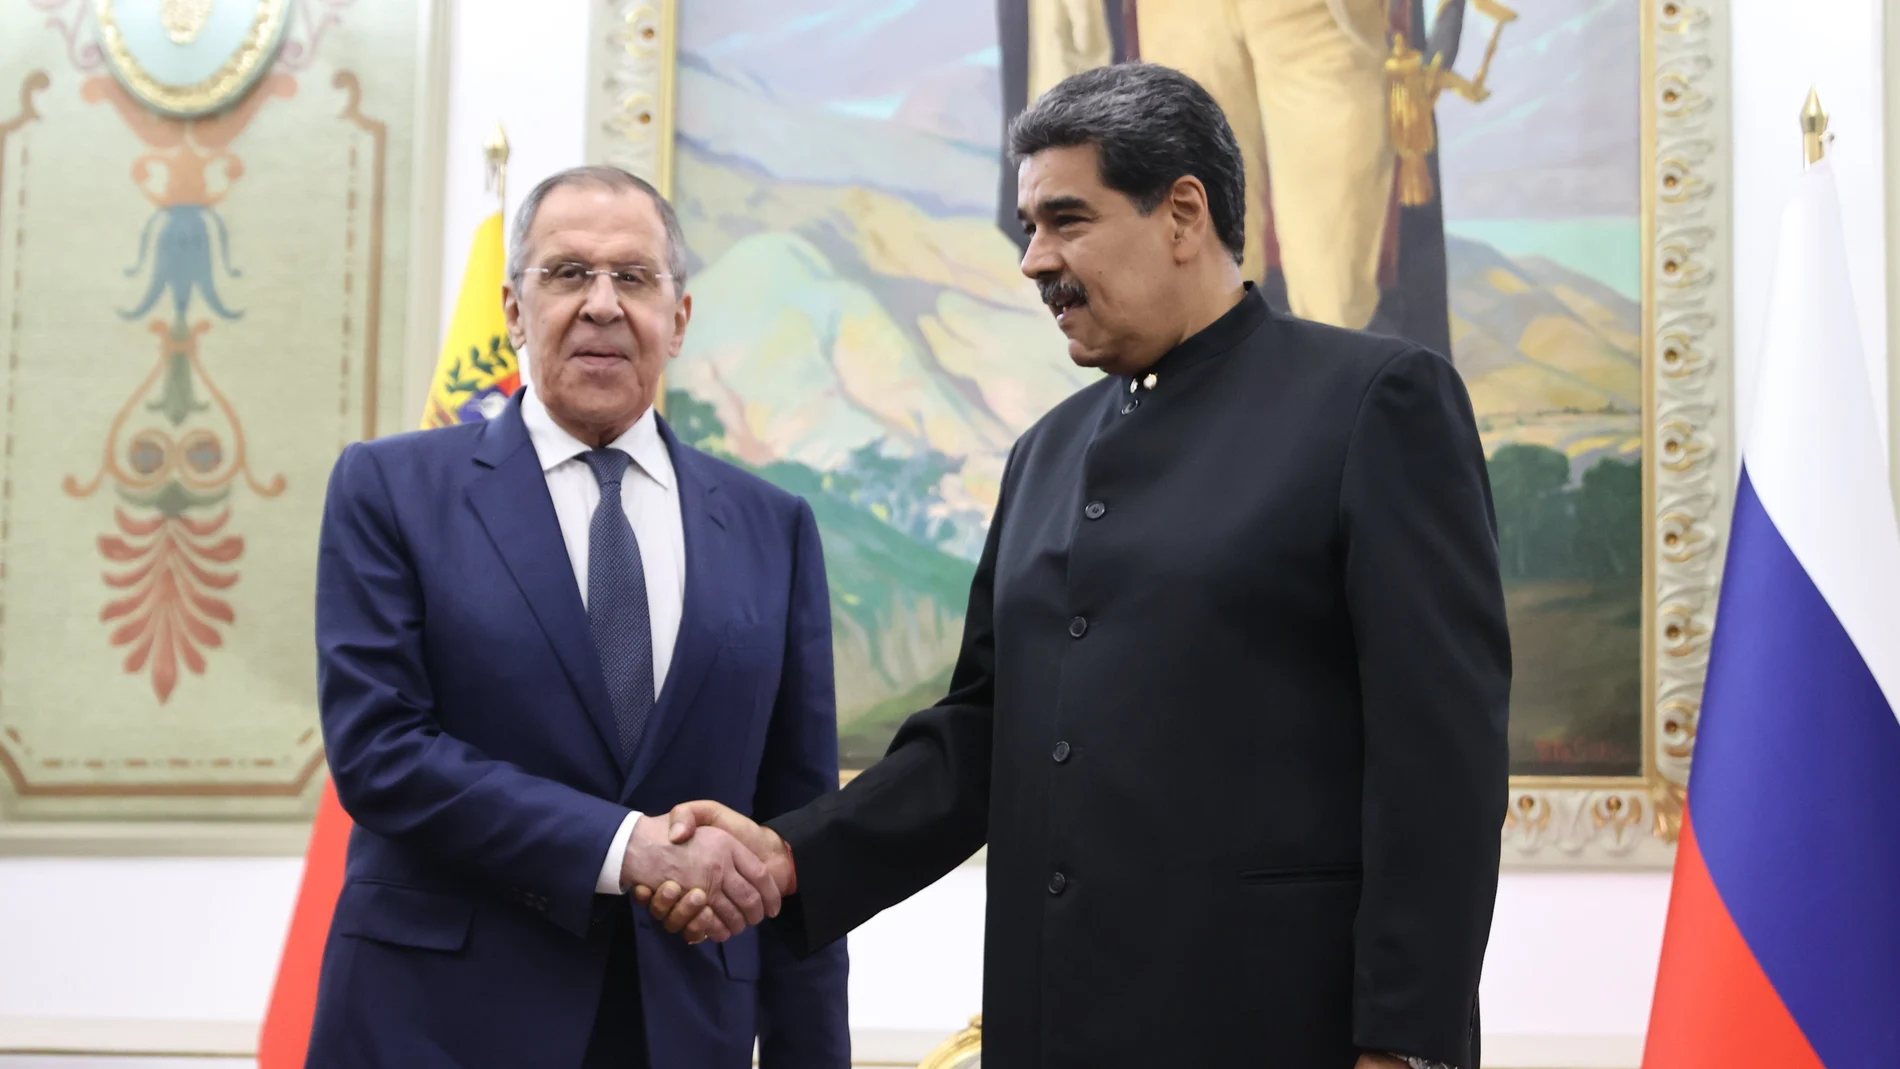 El presidente de Venezuela, Nicolás Maduro, saluda al canciller ruso, Serguéi Lavrov